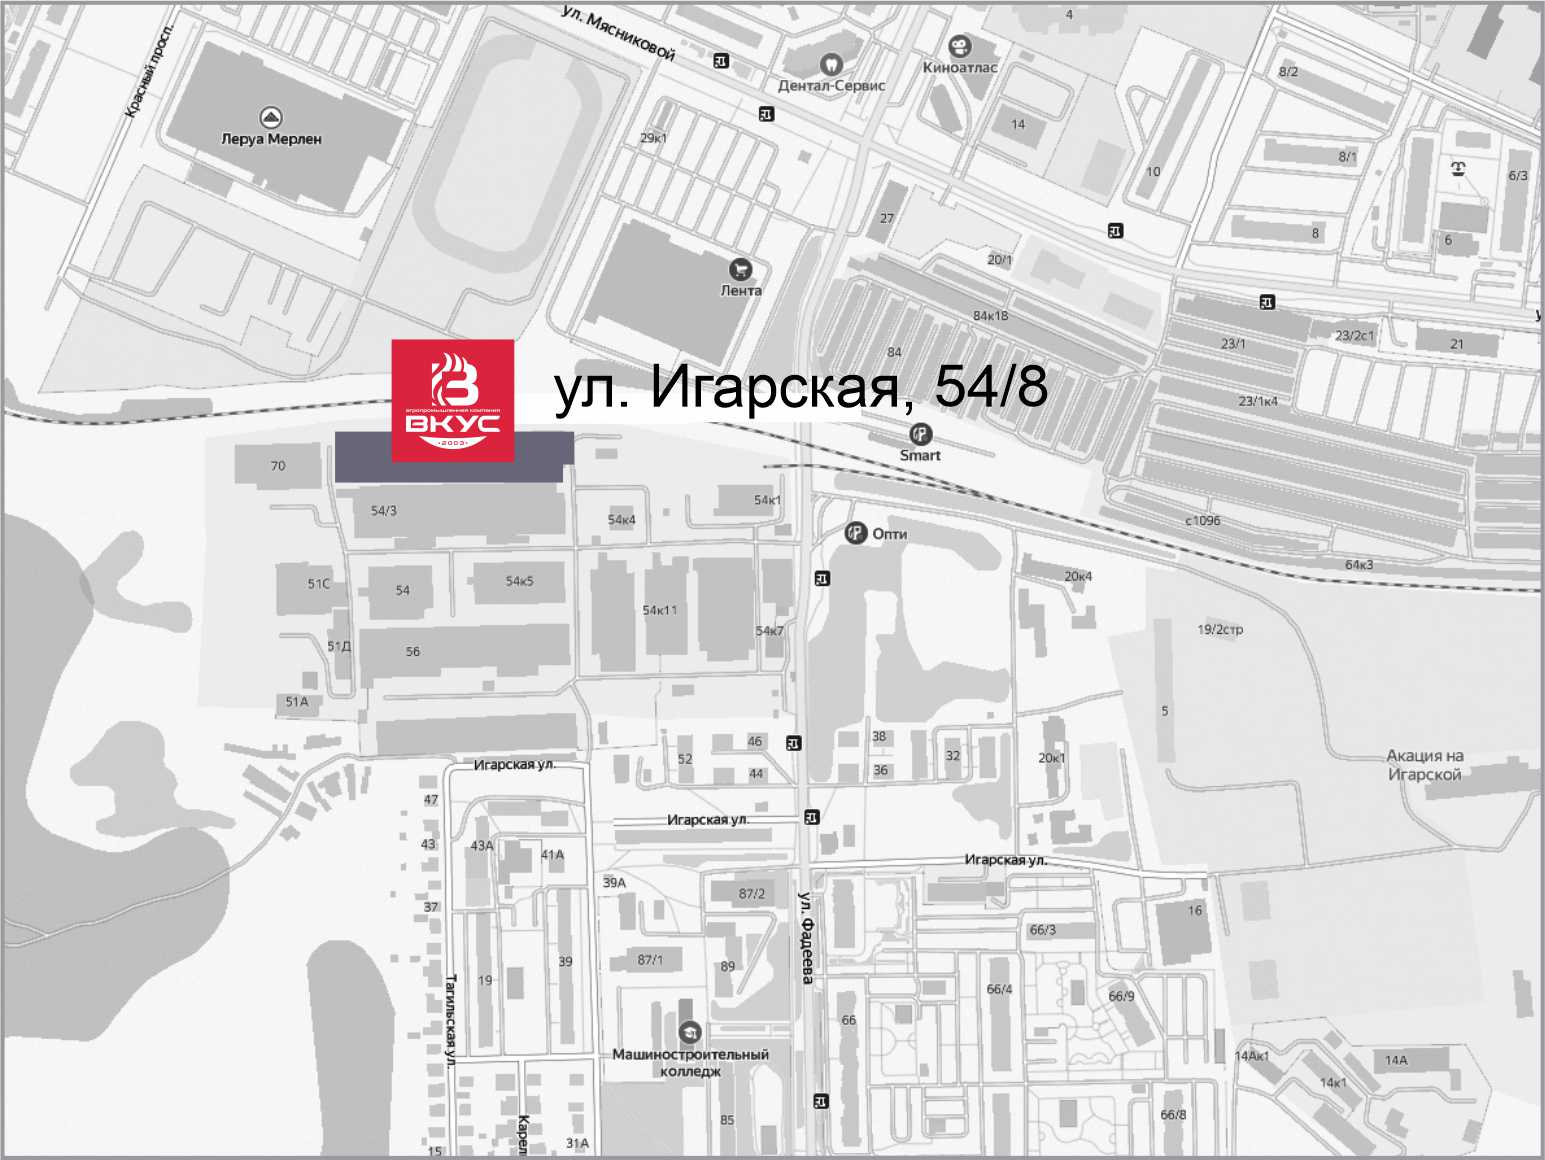 Место на карте в Новосибирске